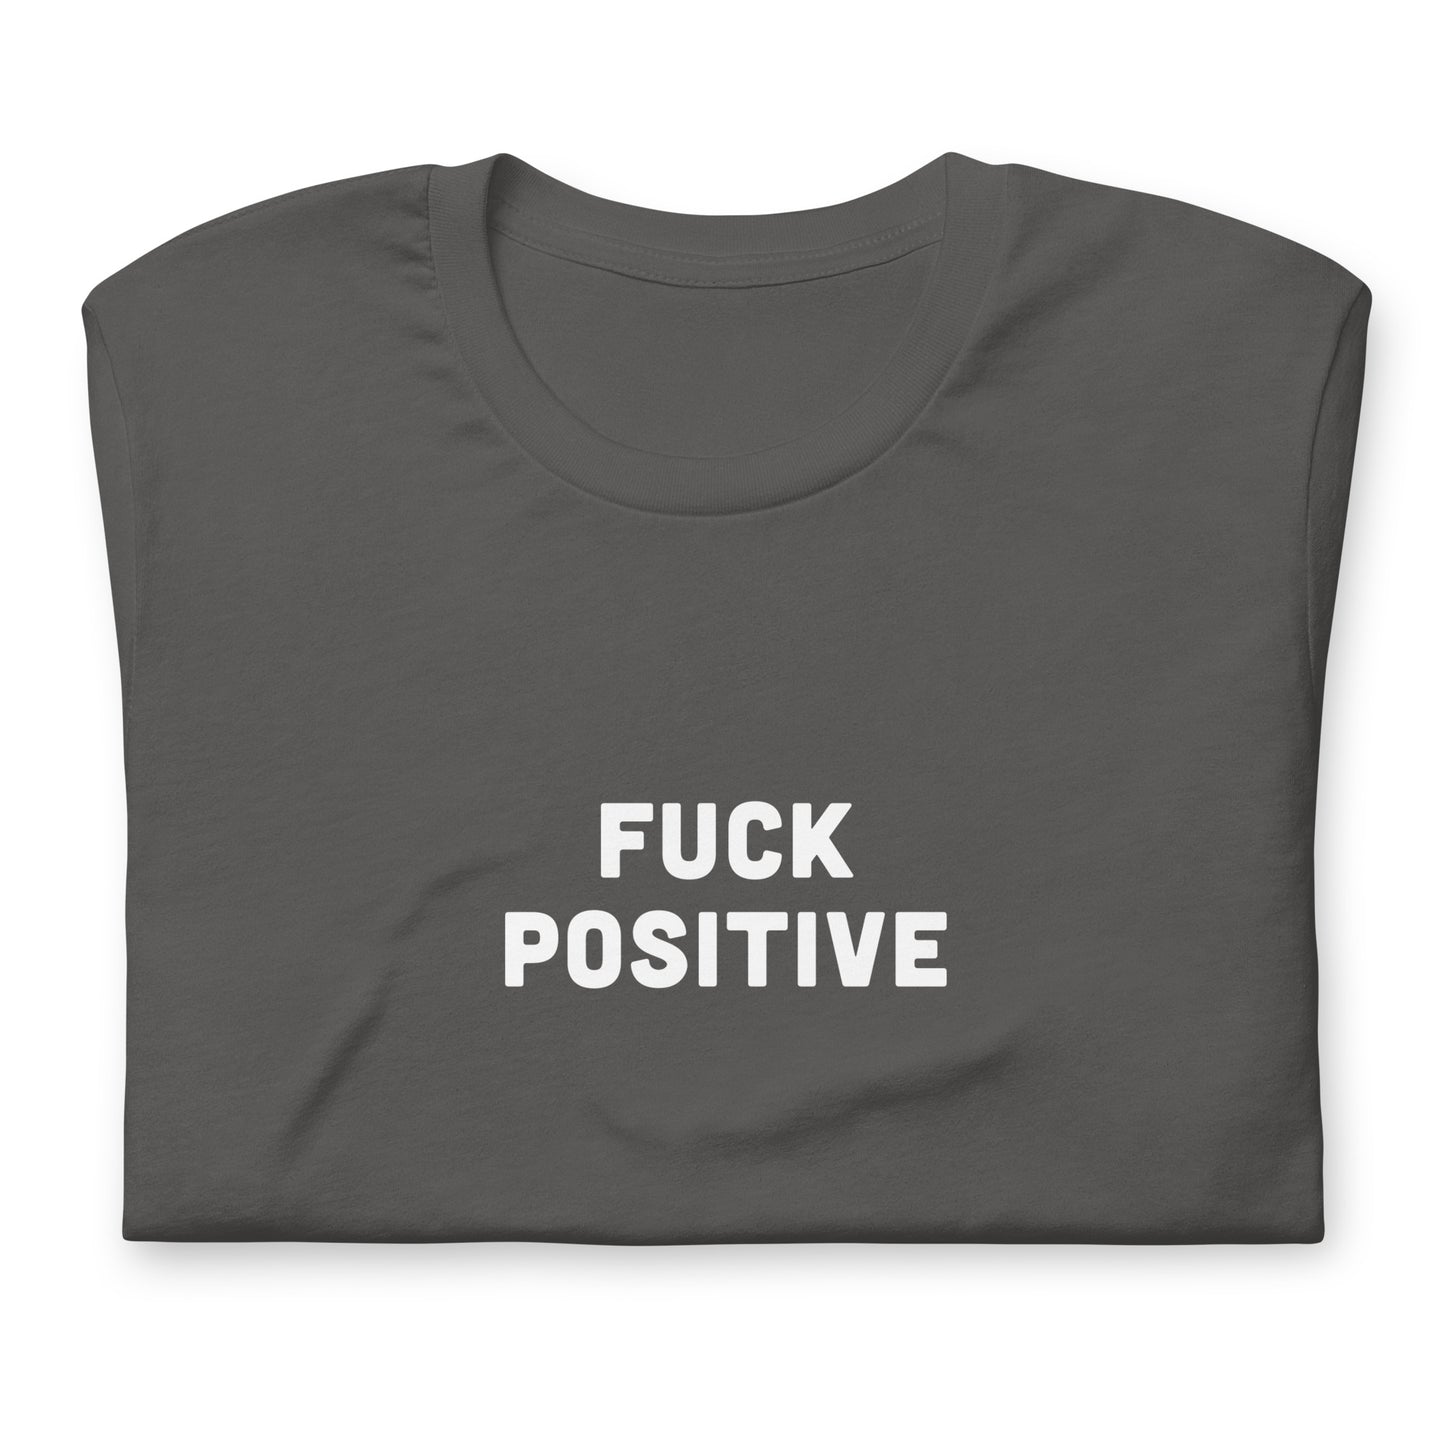 Fuck Positive T-Shirt Size 2XL Color Black